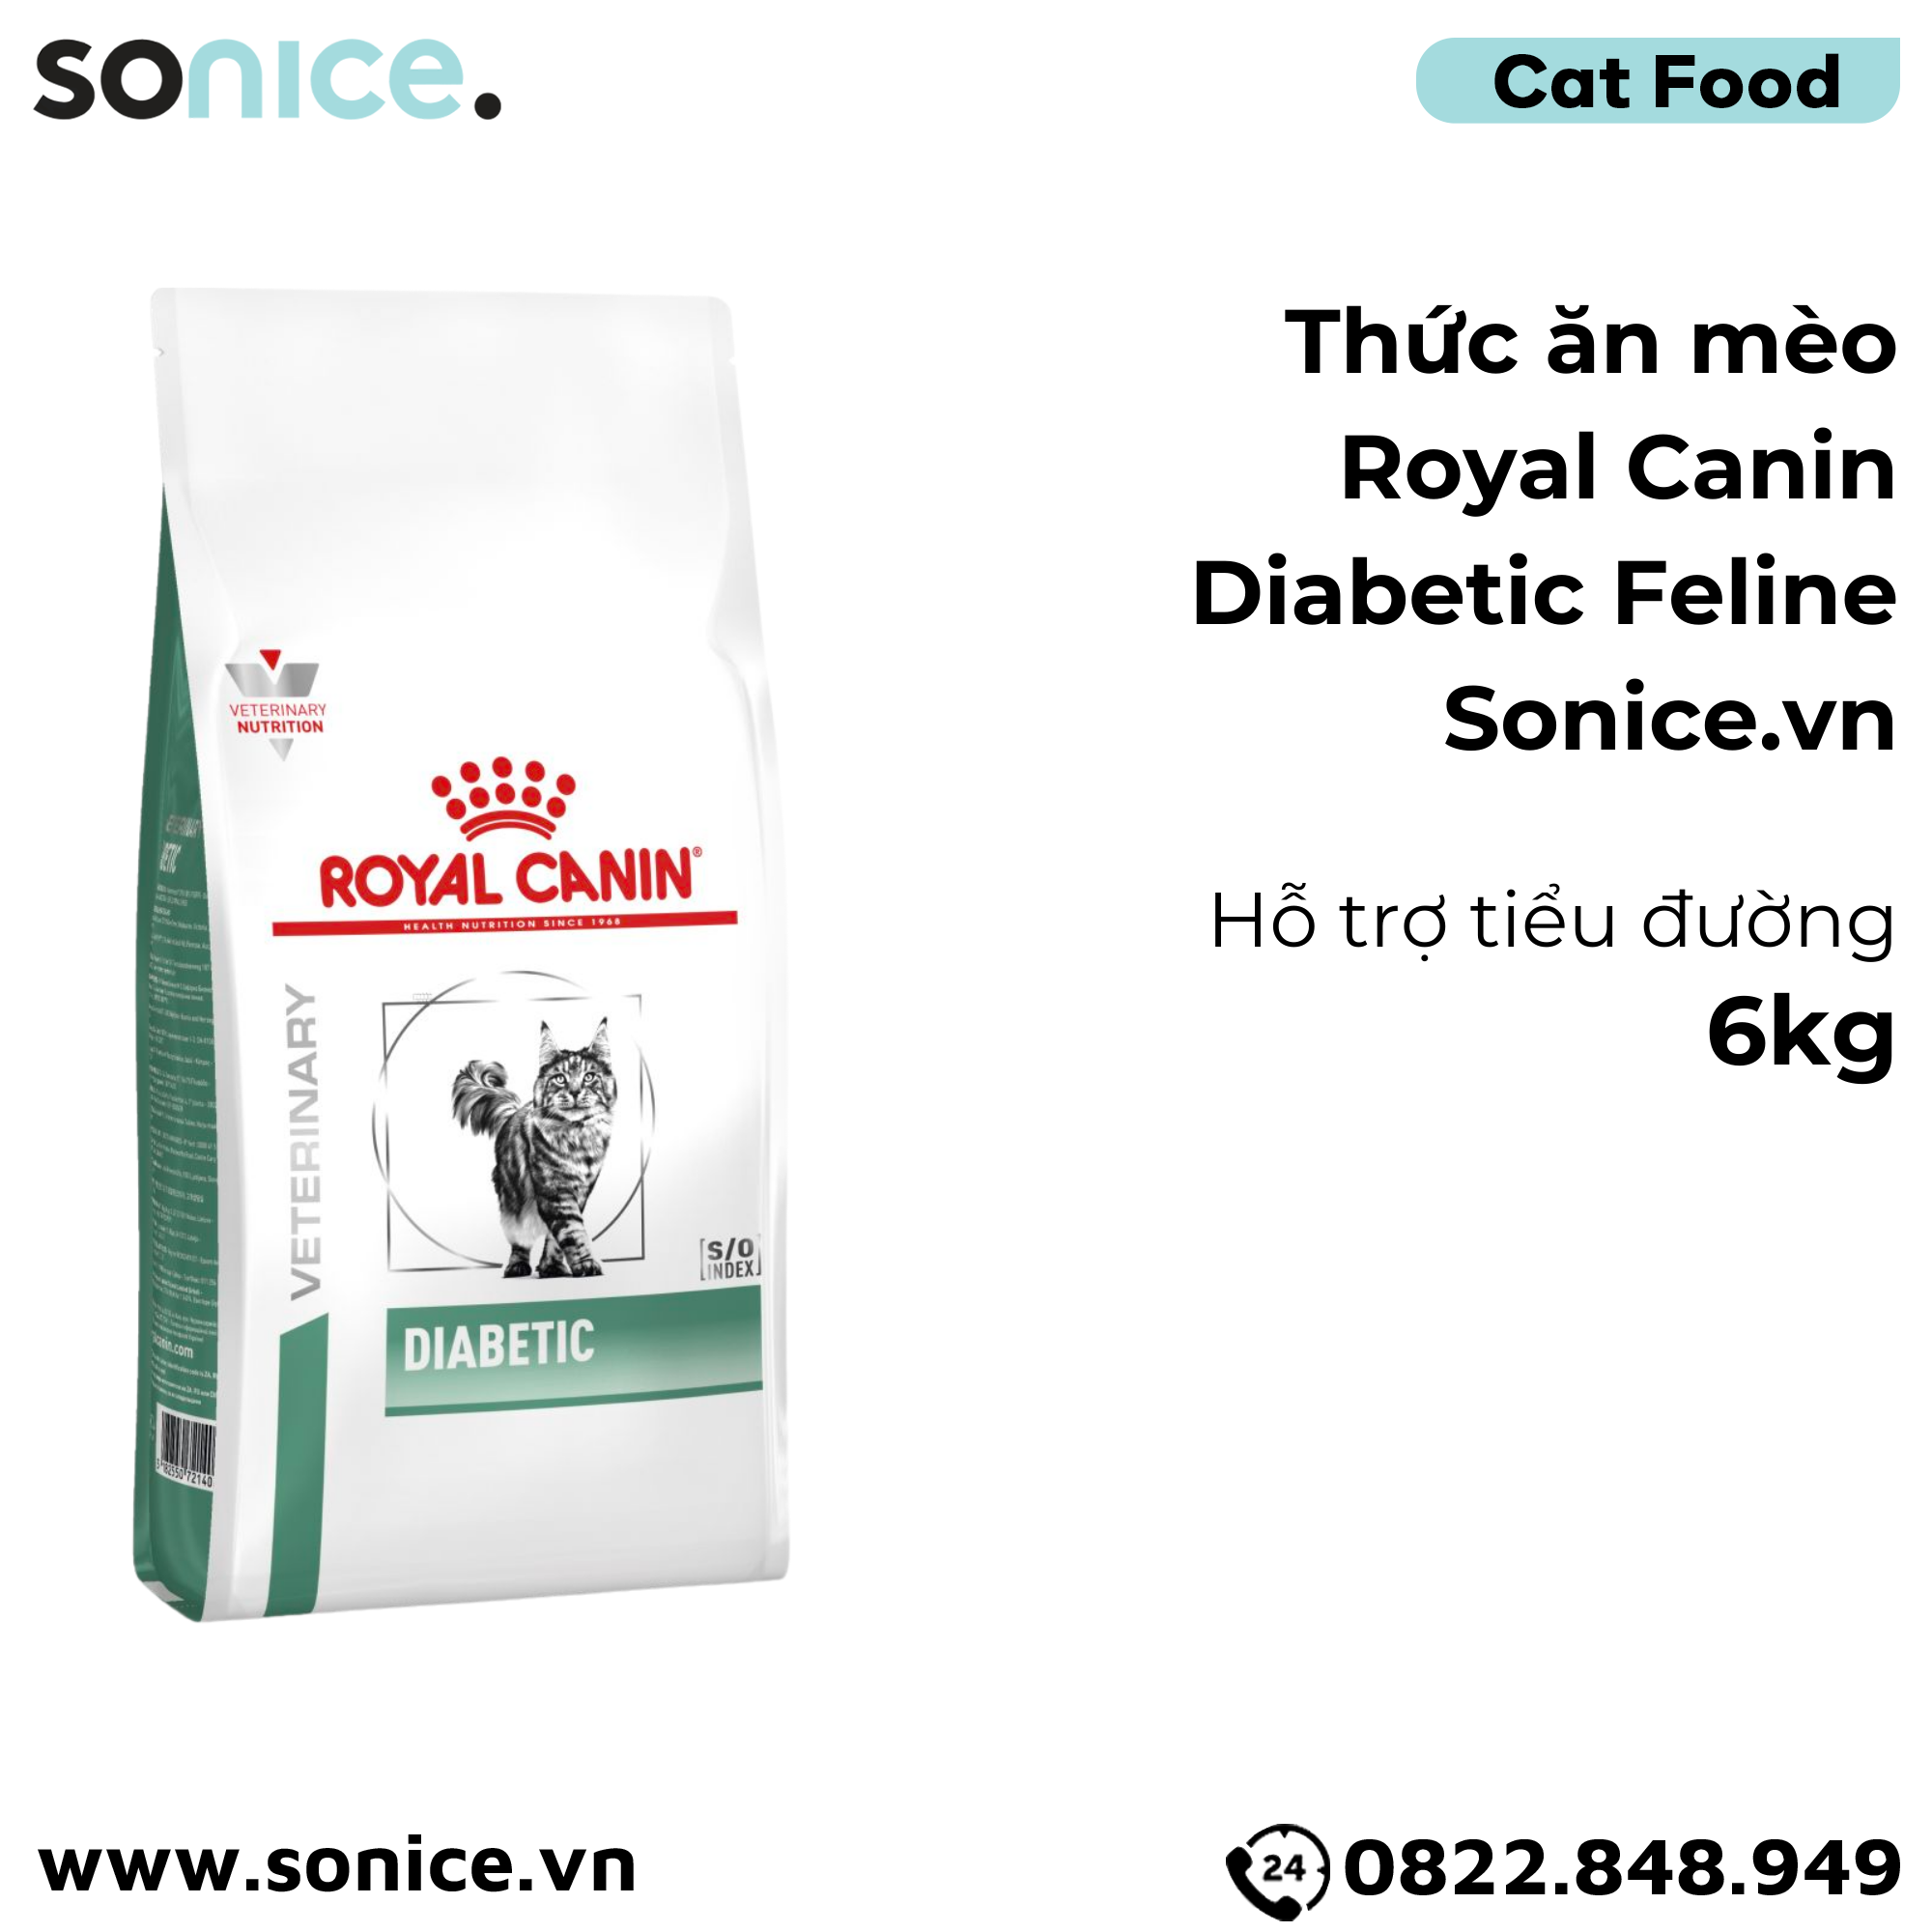  Thức ăn mèo Royal Canin Diabetic Feline 6kg - hỗ trợ bệnh tiểu đường SONICE. 